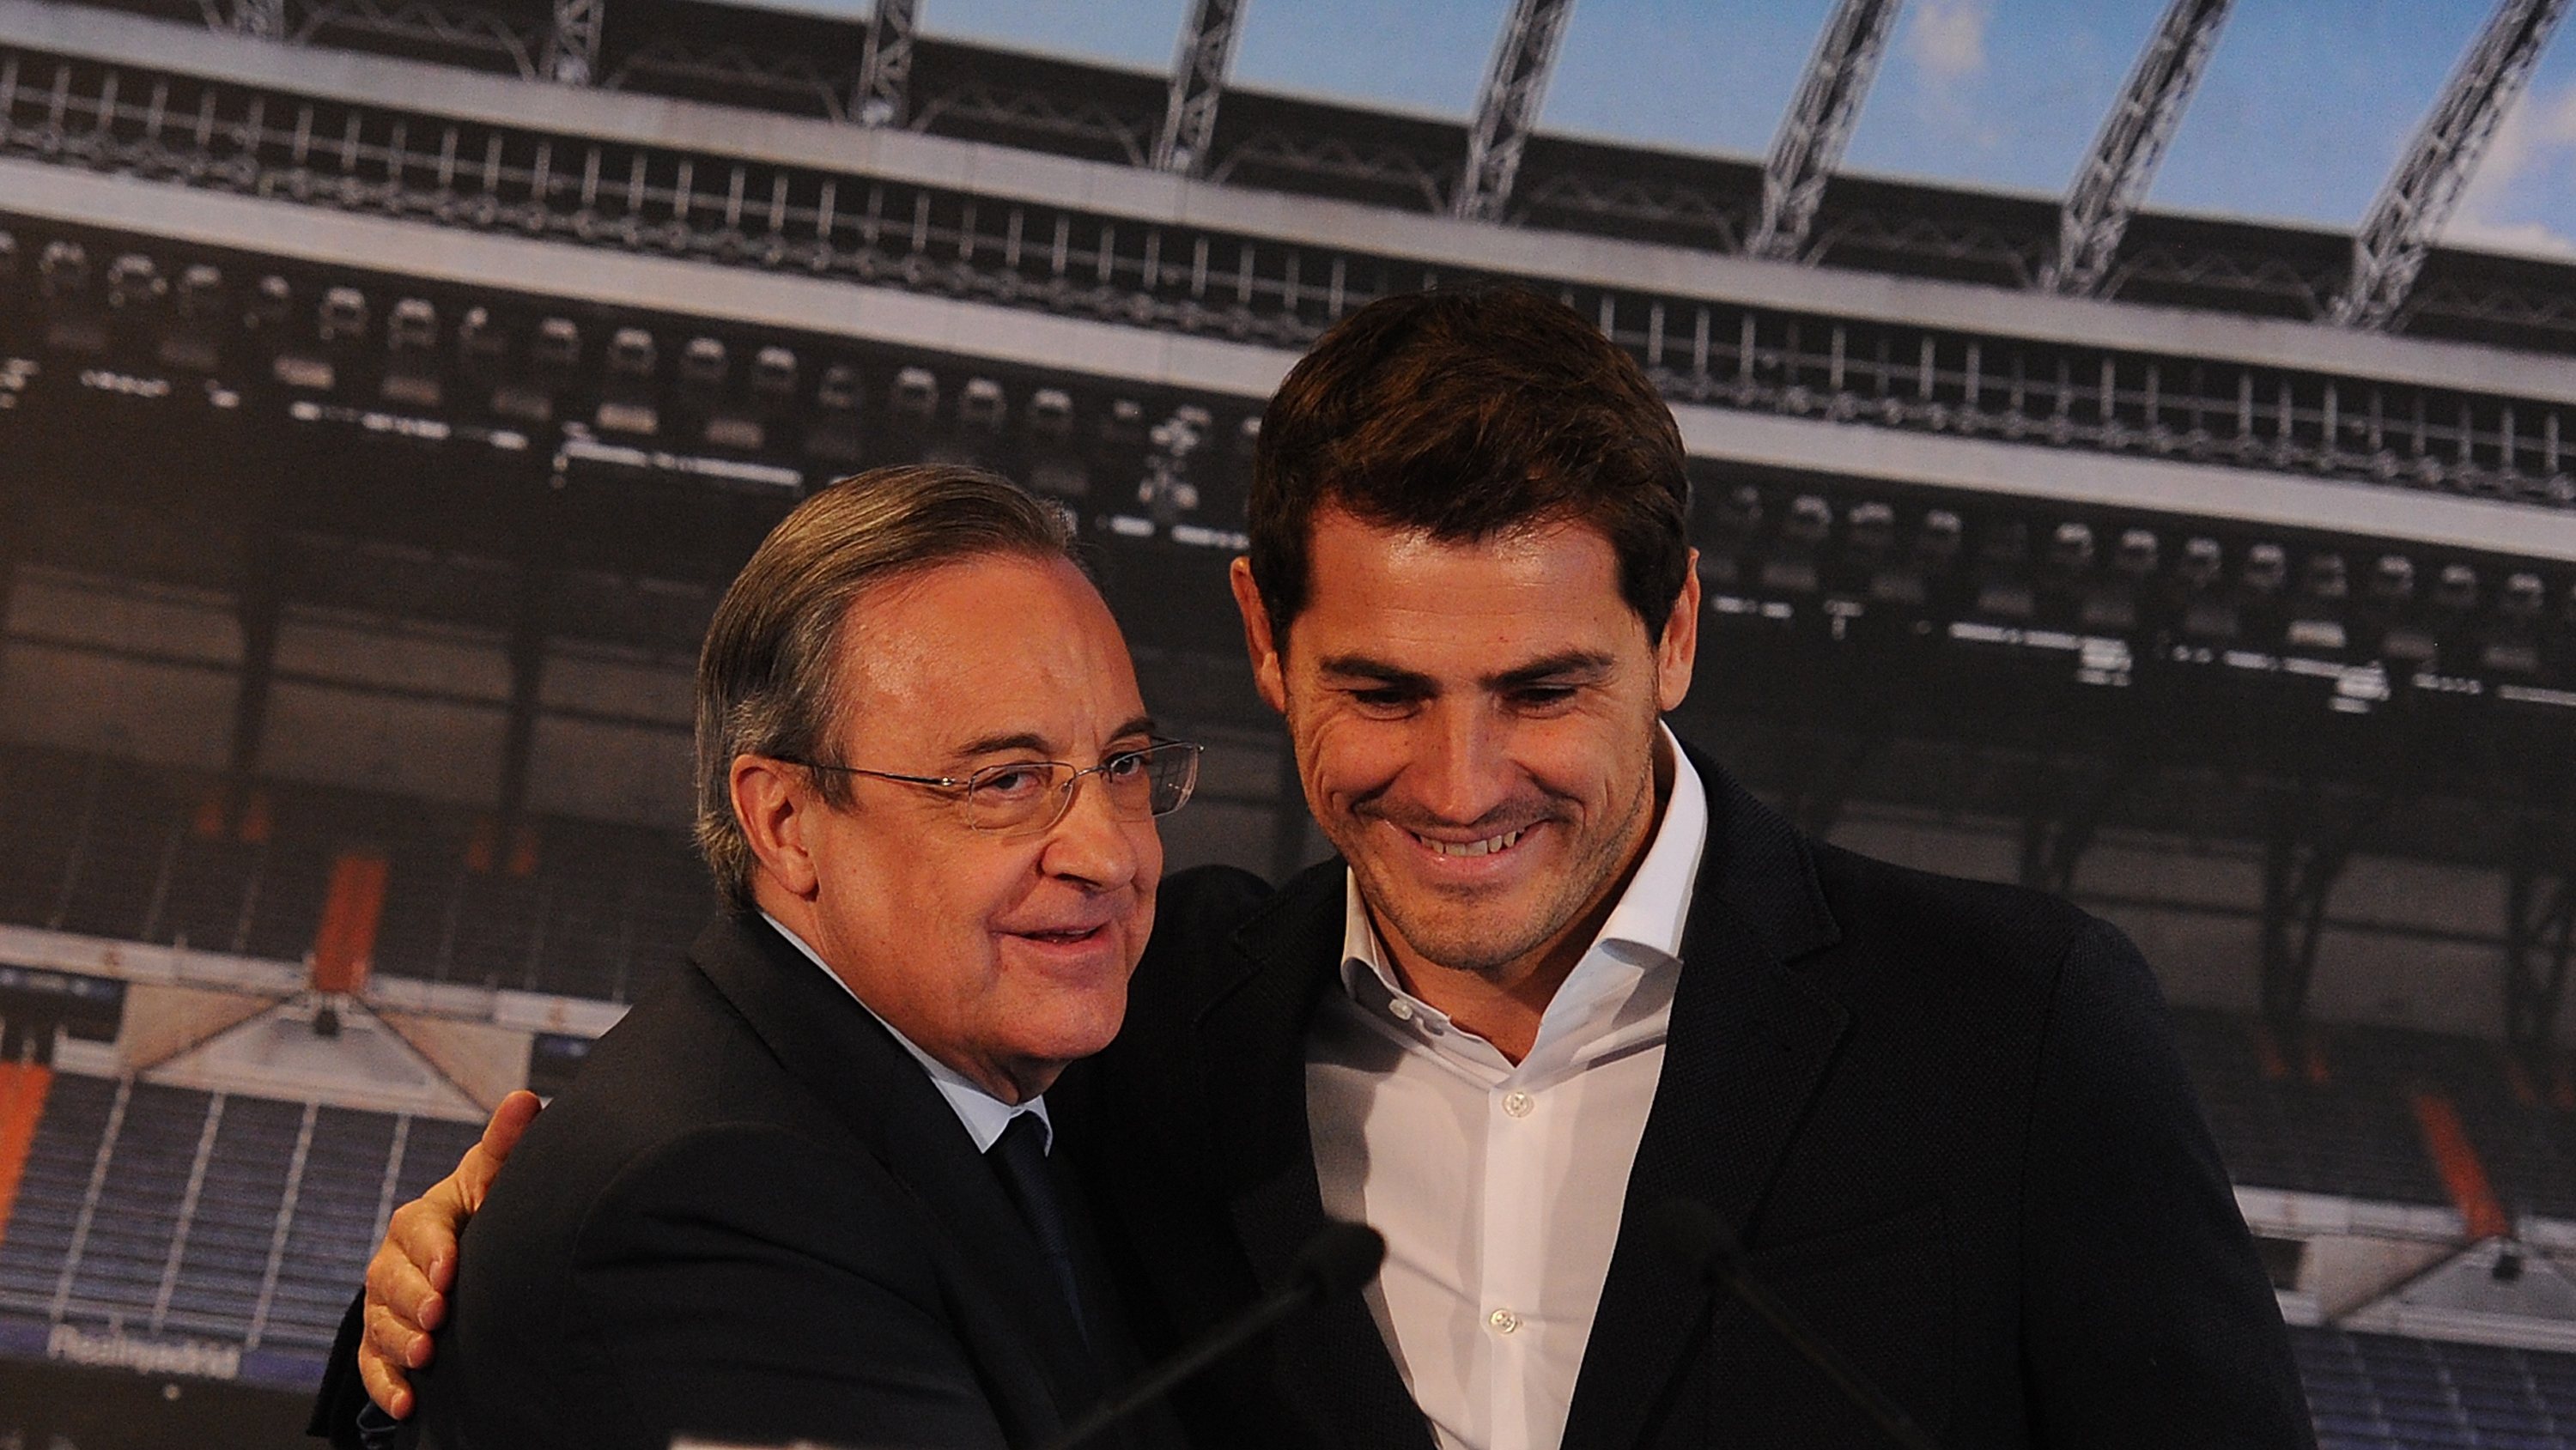 Florentino Pérez e Iker Casillas aquando da saída do guarda-redes do clube espanhol, em 2015. Mas em 2006 o presidente chamou-lhe &quot;fraude&quot;